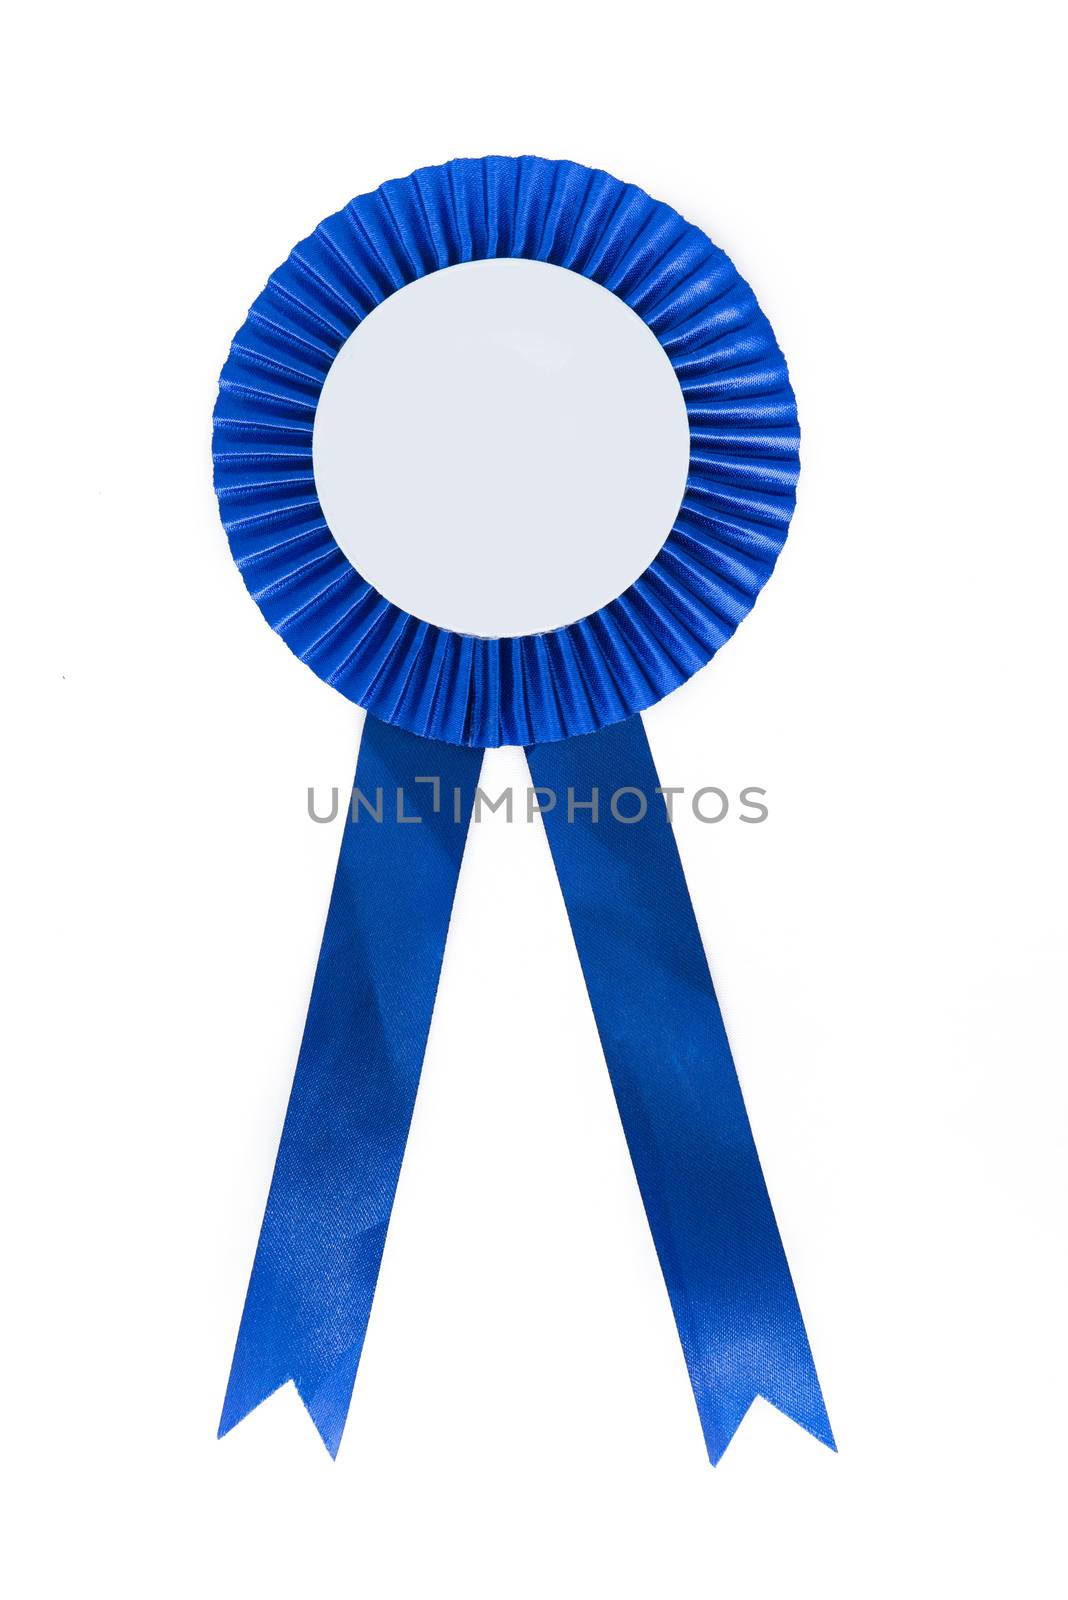 blue fabric award ribbon isolated on white background